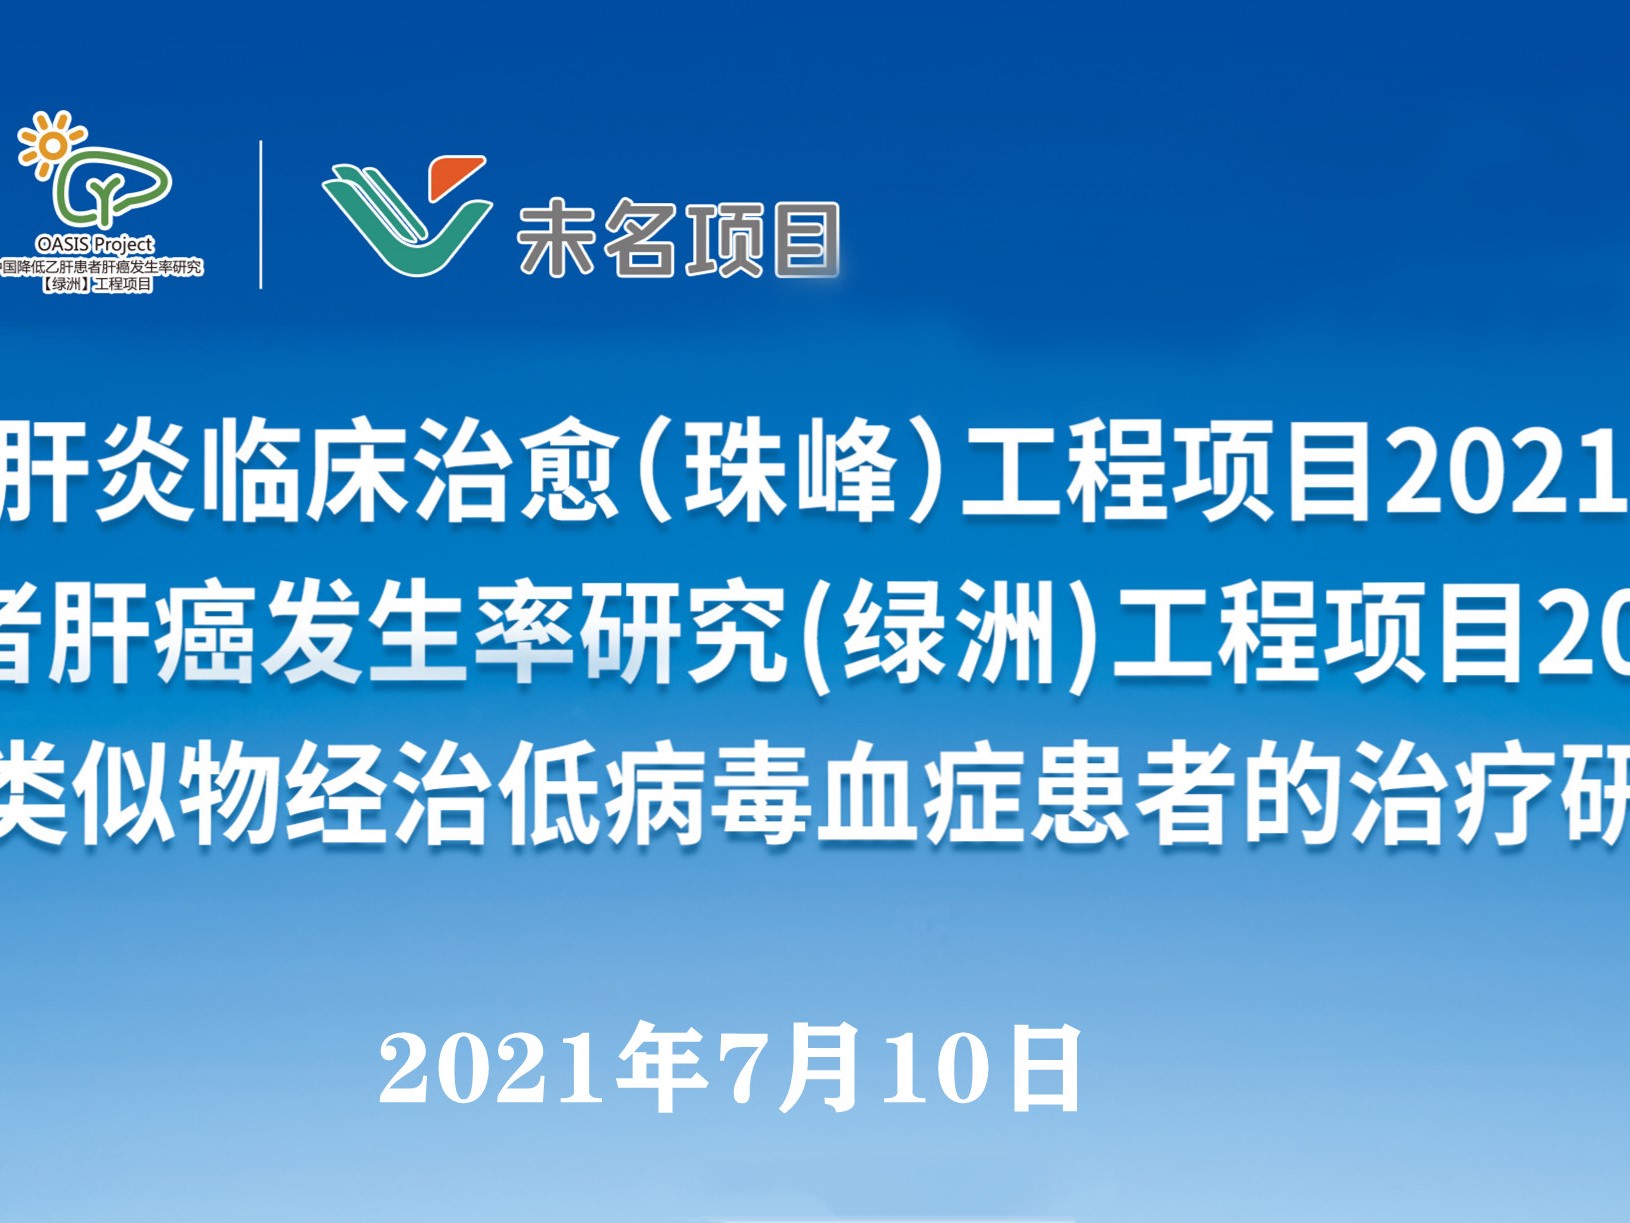 7月10日丨“珠峰”工程项目、“绿洲”工程项目2021年度管理工作会议及“未名”项目启动培训会